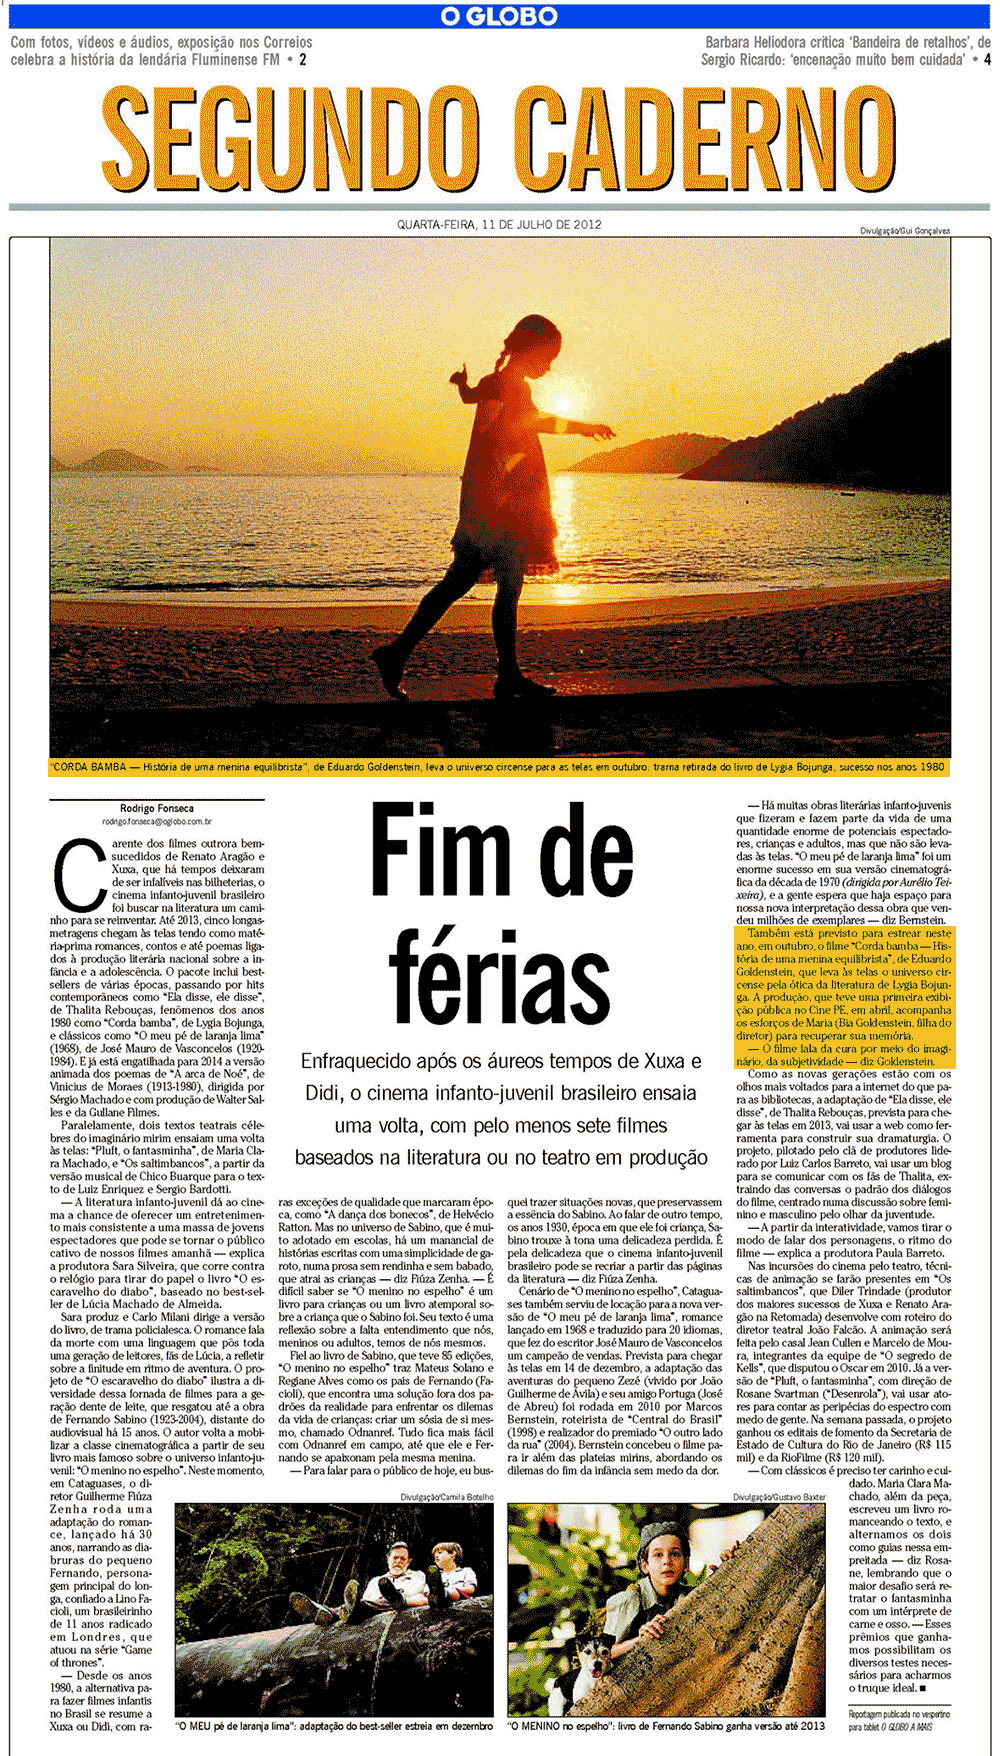 O Globo - Segundo Caderno | jul. 2012